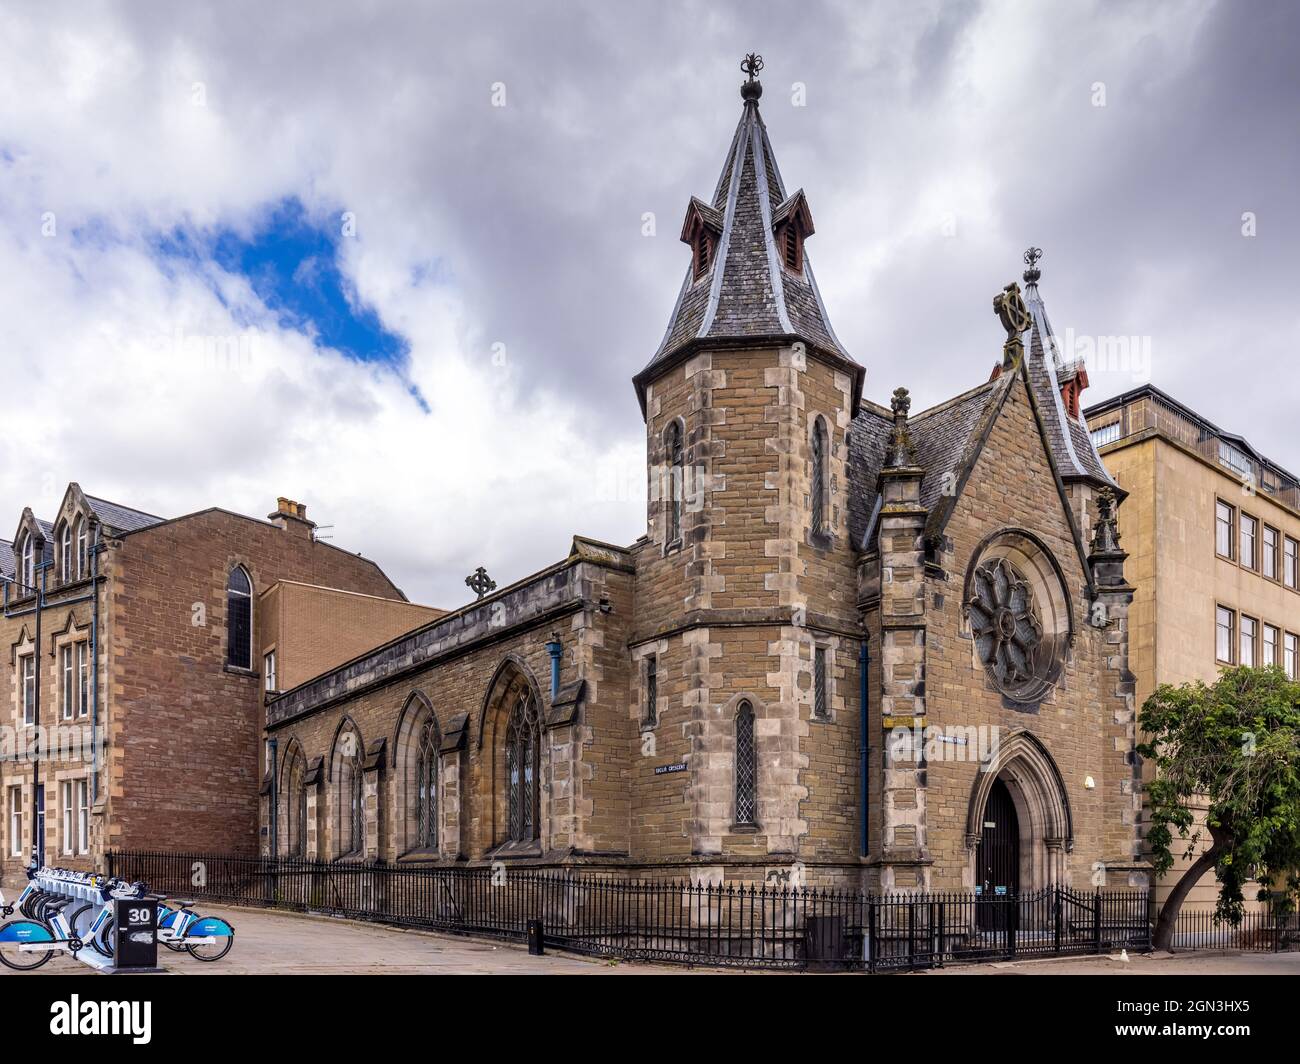 L'ancienne église congrégationale sur la rue Panmure, Dundee.Cette ancienne église gothique a été convertie en bibliothèque et en salle pour l'école secondaire de Dundee en 1985. Banque D'Images